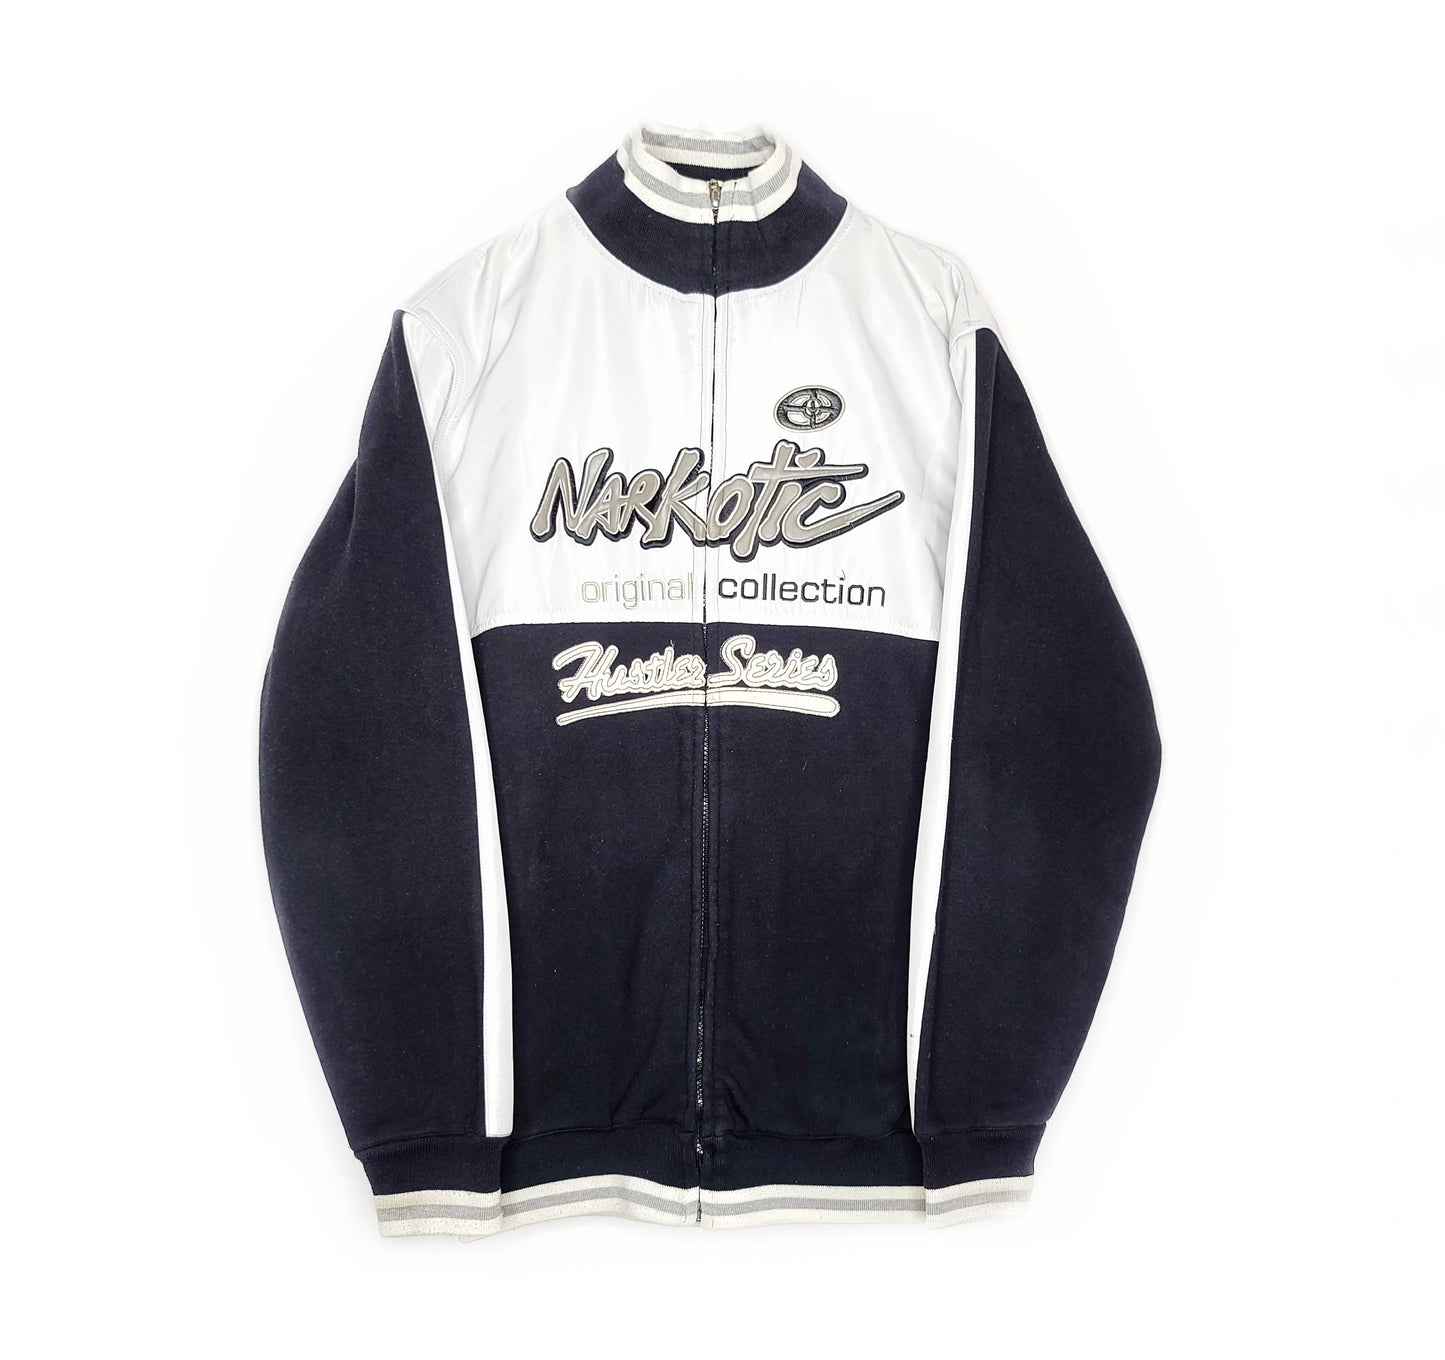 Narkotik streetwear sweat vintage 90s hiphop oversize tag archive